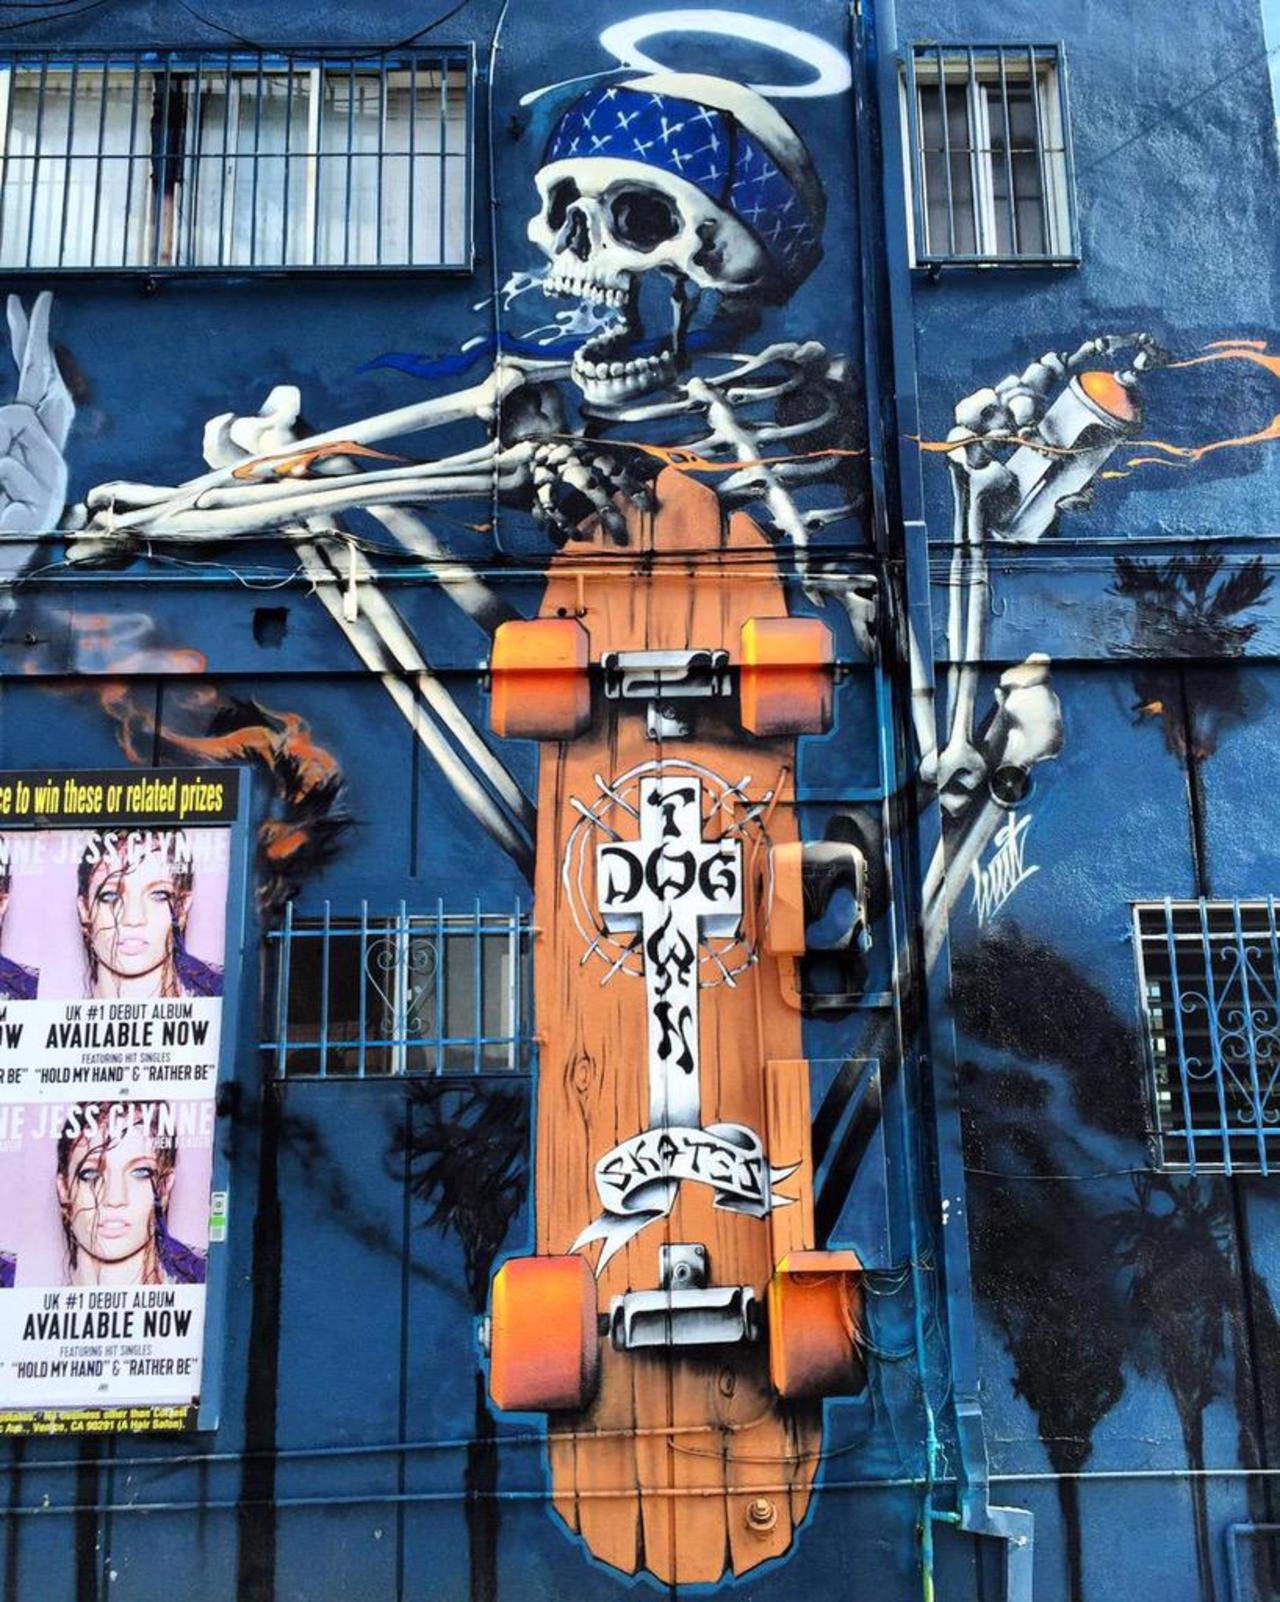 RT @richardbanfa: #streetart dogtown skates by #huit in #venice #LosAngeles  #bedifferent #graffiti #arte #art http://t.co/a1Ur0a5AV8